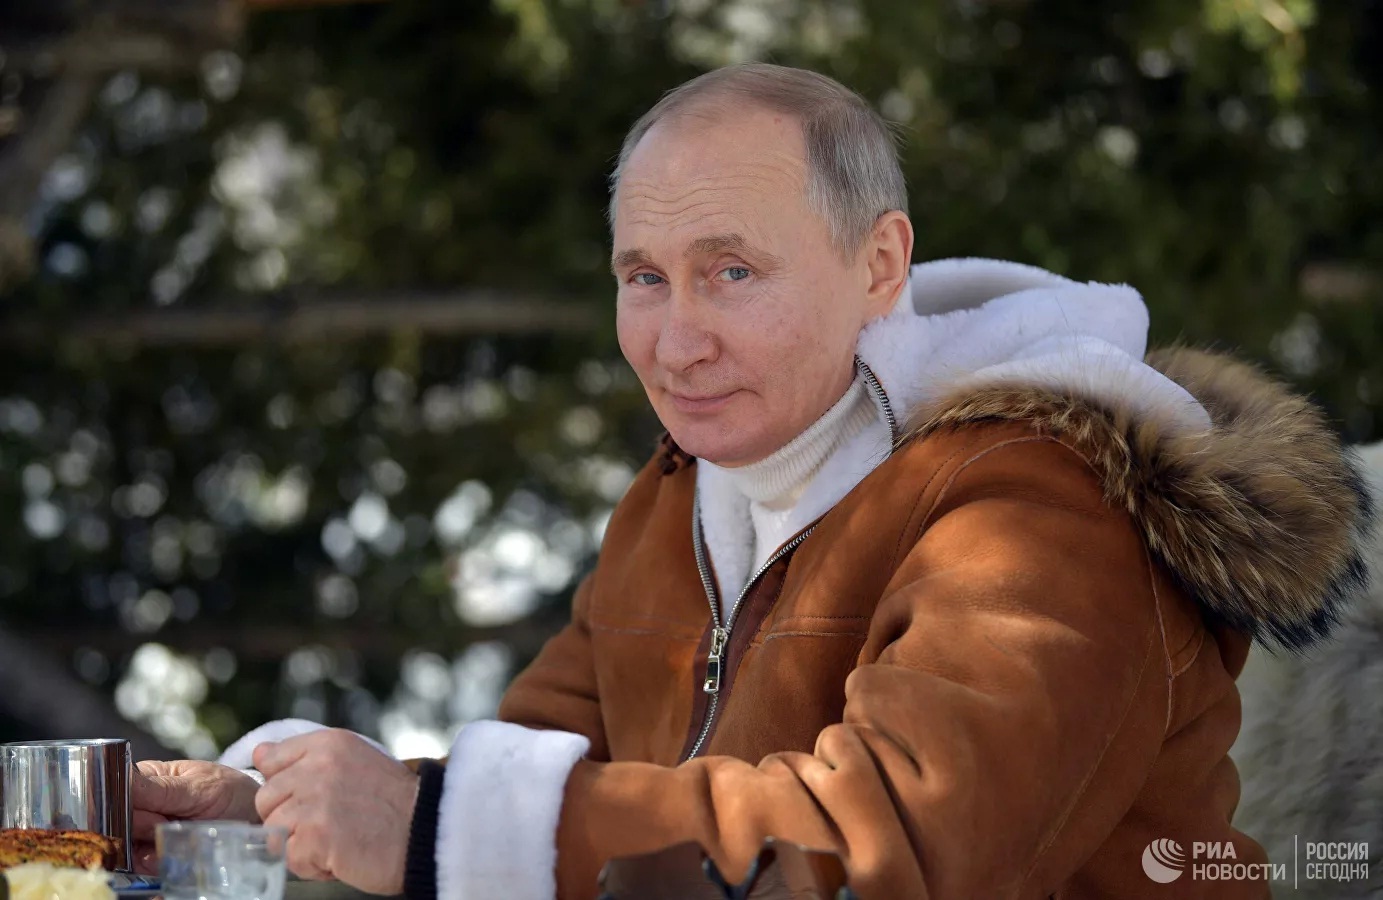 Ưa du lịch mạo hiểm, Tổng thống Putin nhiều lần bị 'cấm cản'